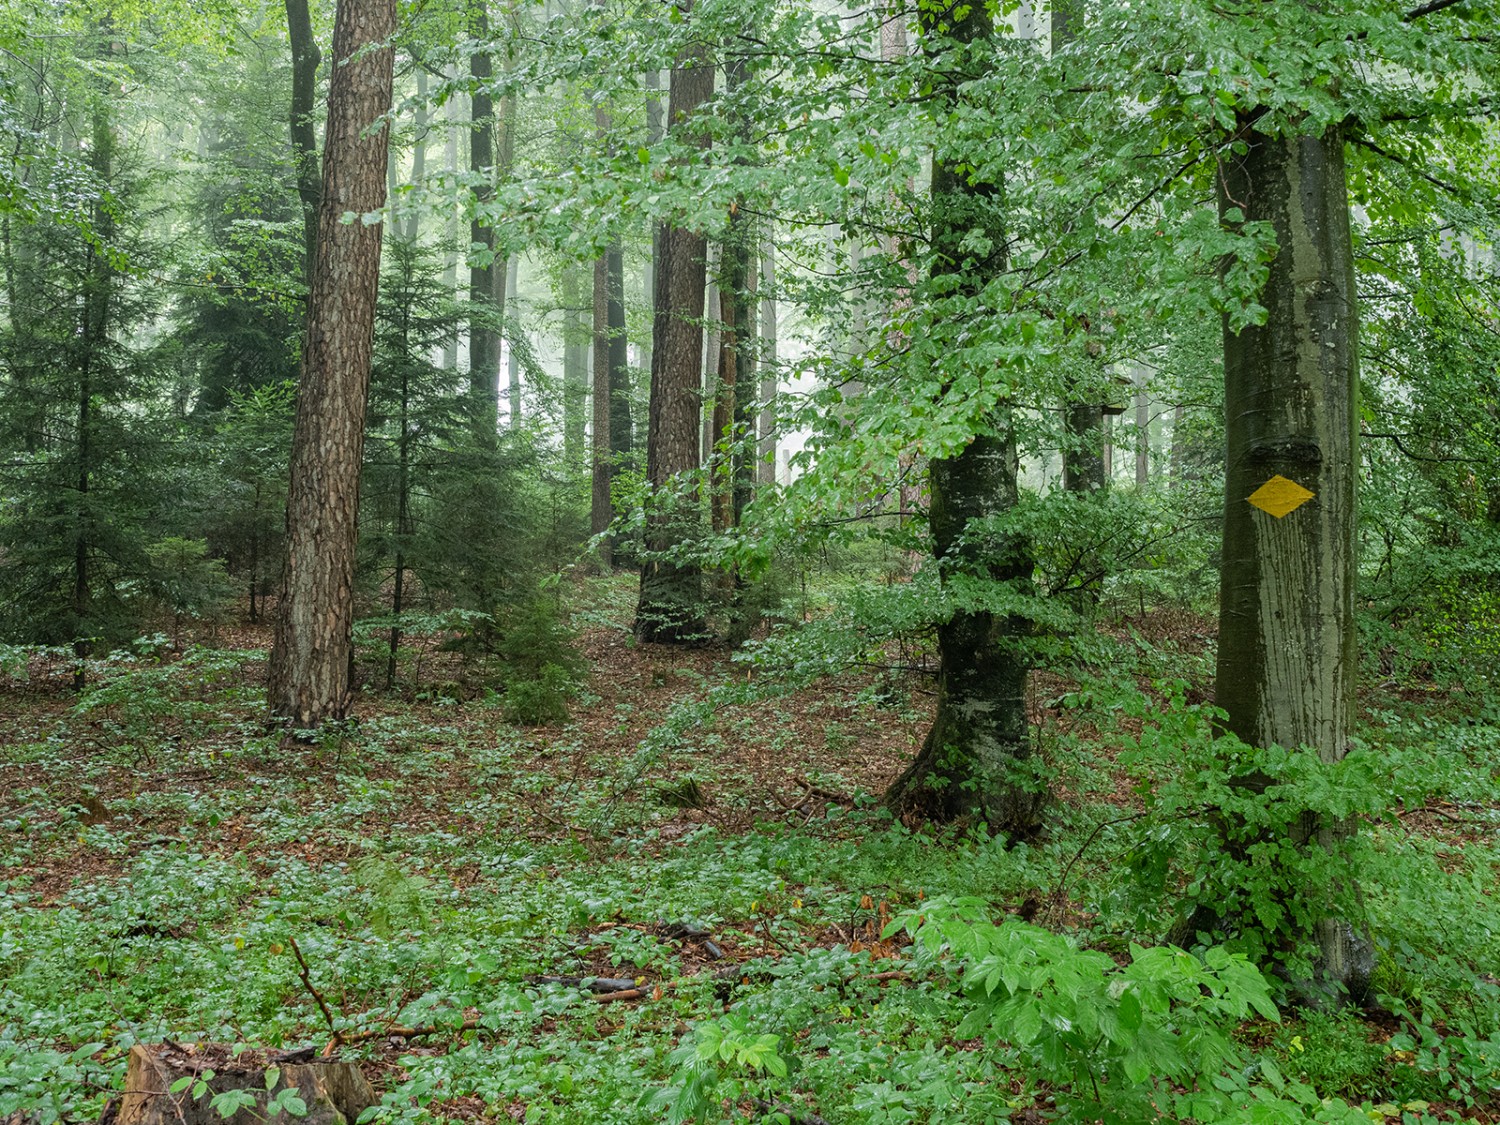 En surface, le réseau de chemins de randonnée traverse la forêt mixte et de rapport de Grauholz. Sous la terre s’étend le réseau des champignons.